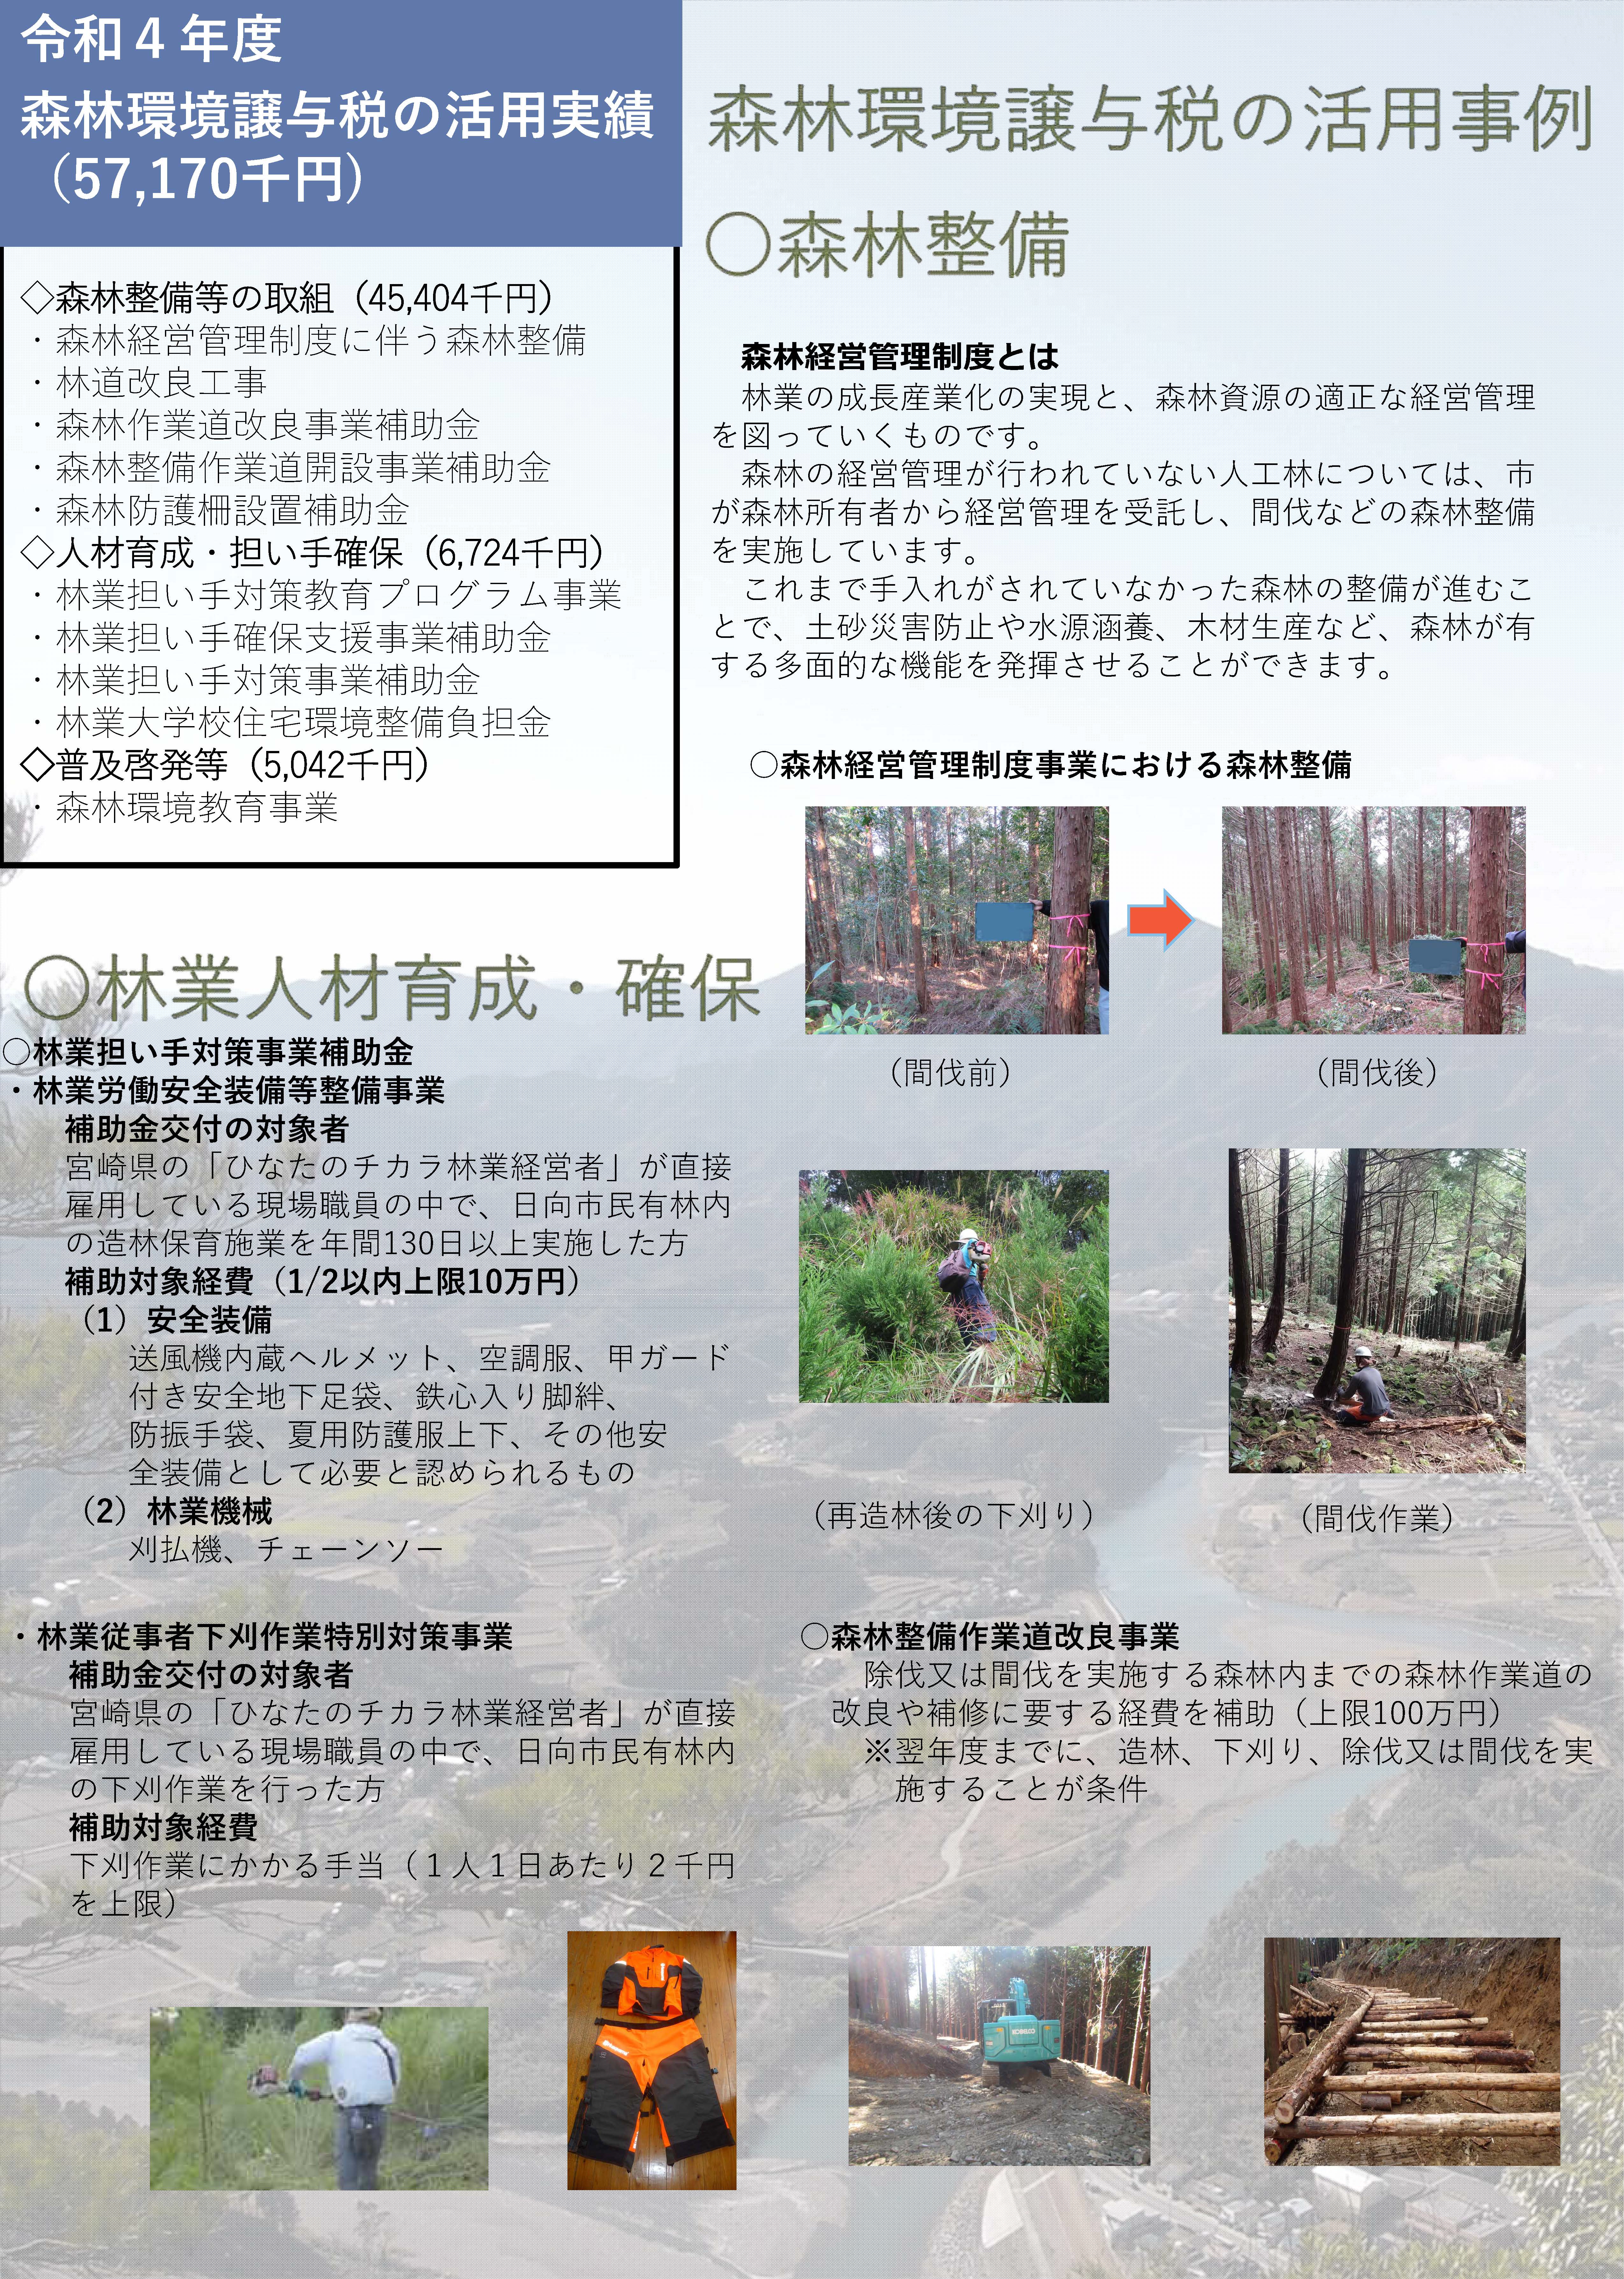 森林環境譲与税を活用した自治体の取組の紹介 Vol.15 宮崎県日向市